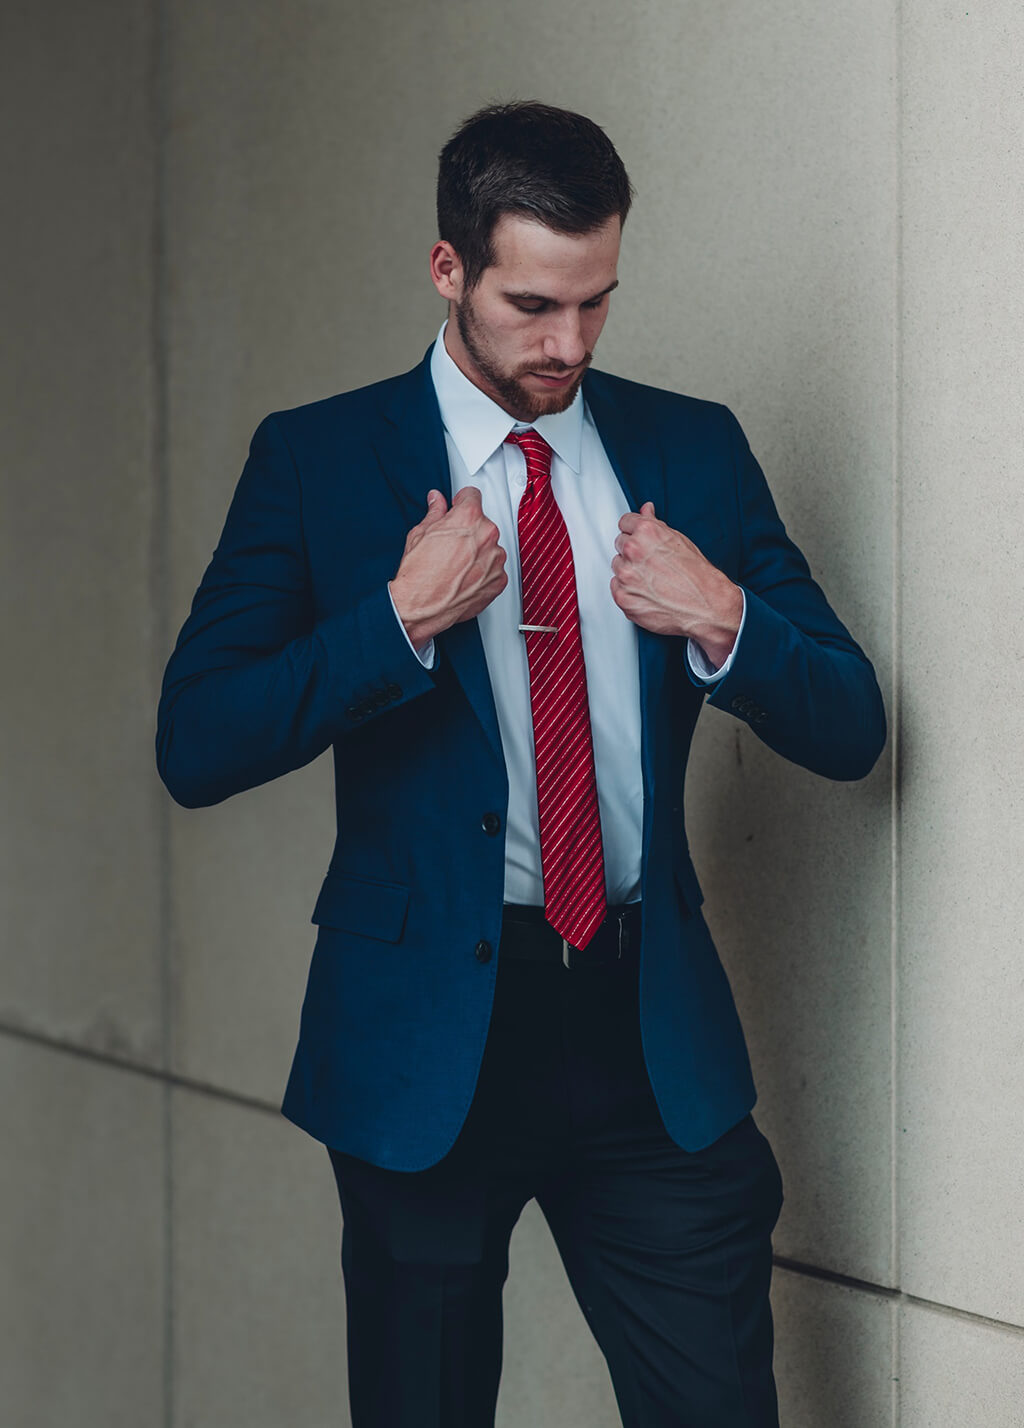 領帶夾可以將領帶固定在襯衫上，是一個美觀與實用兼備的西裝配件。